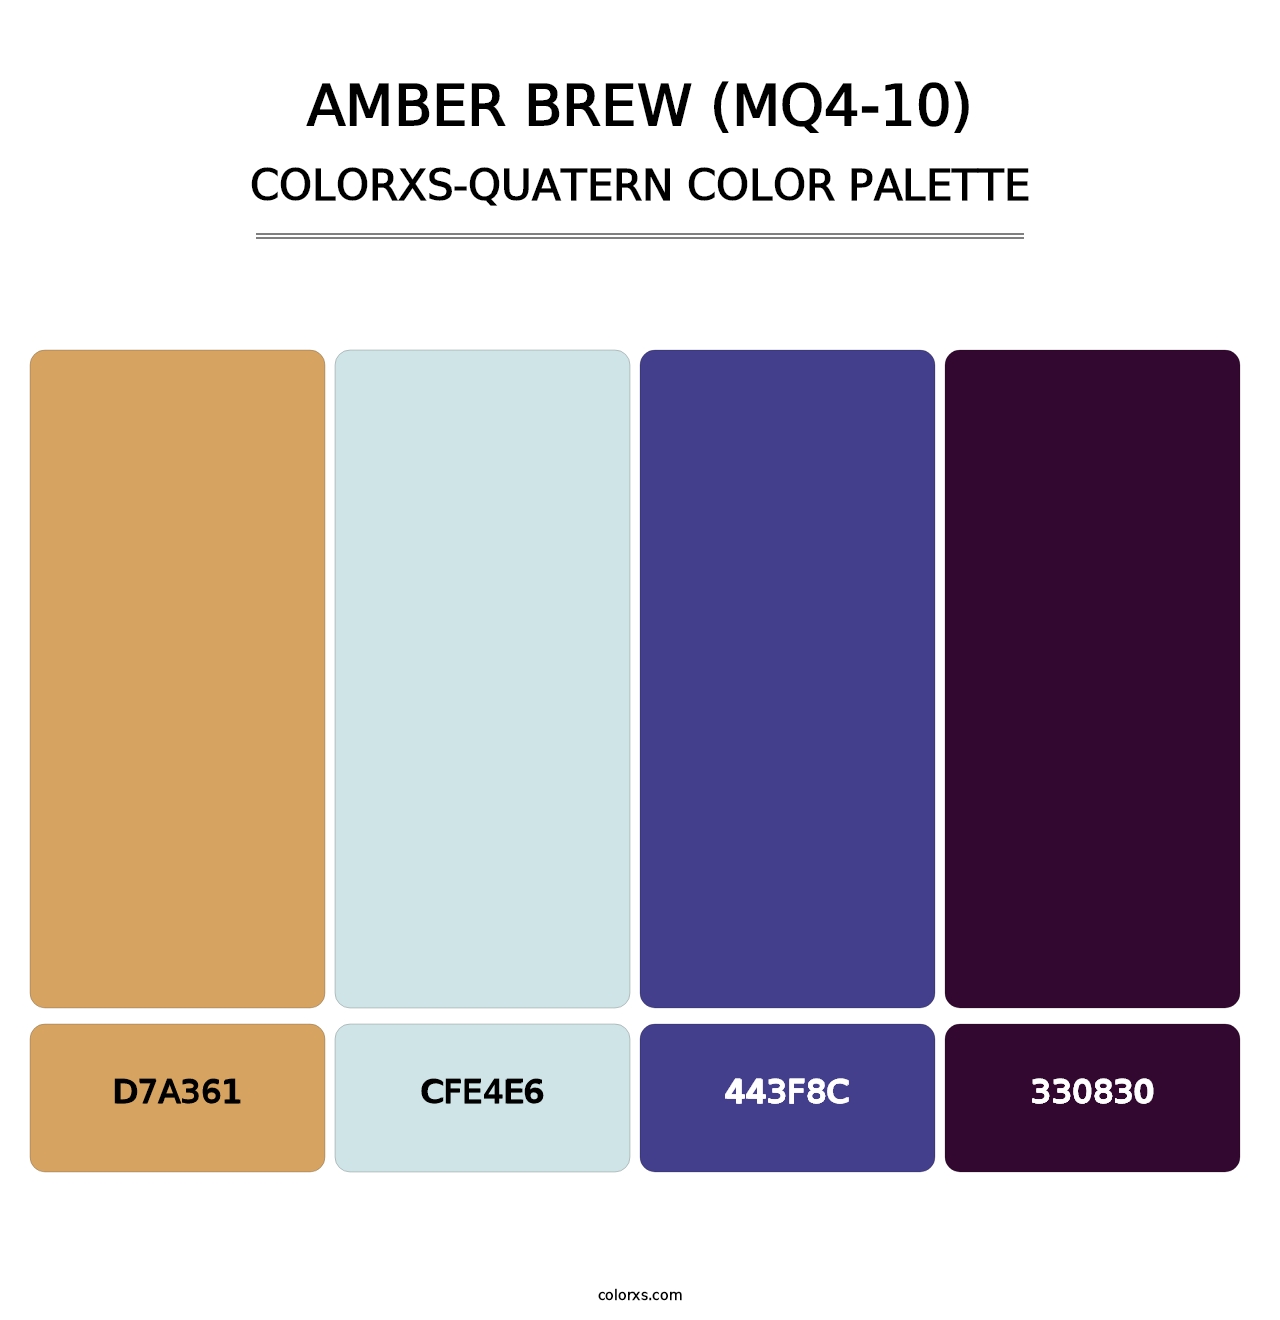 Amber Brew (MQ4-10) - Colorxs Quatern Palette